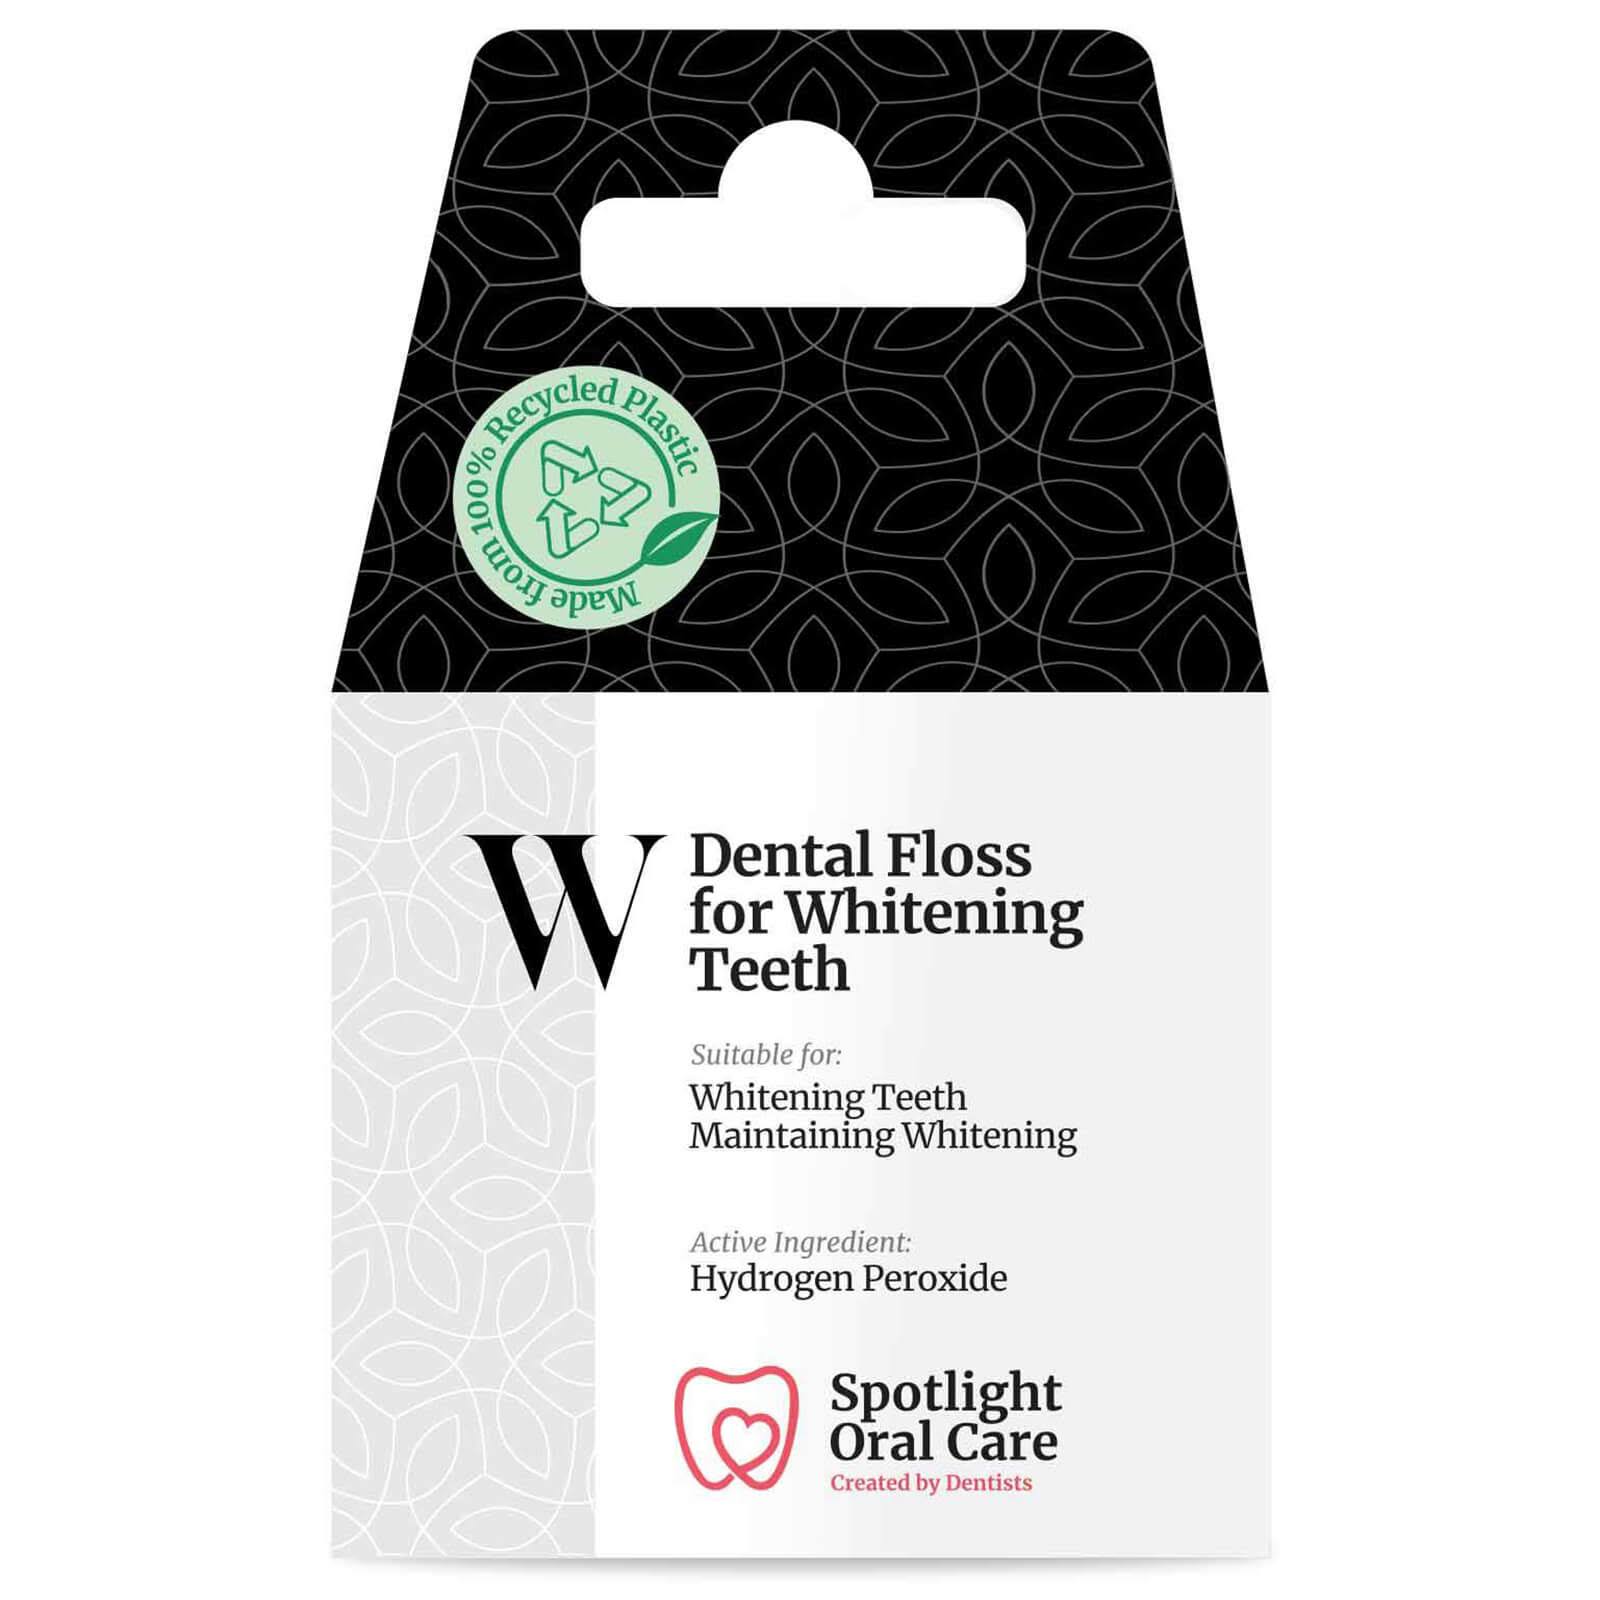 Spotlight Dental Floss for Whitening Teeth